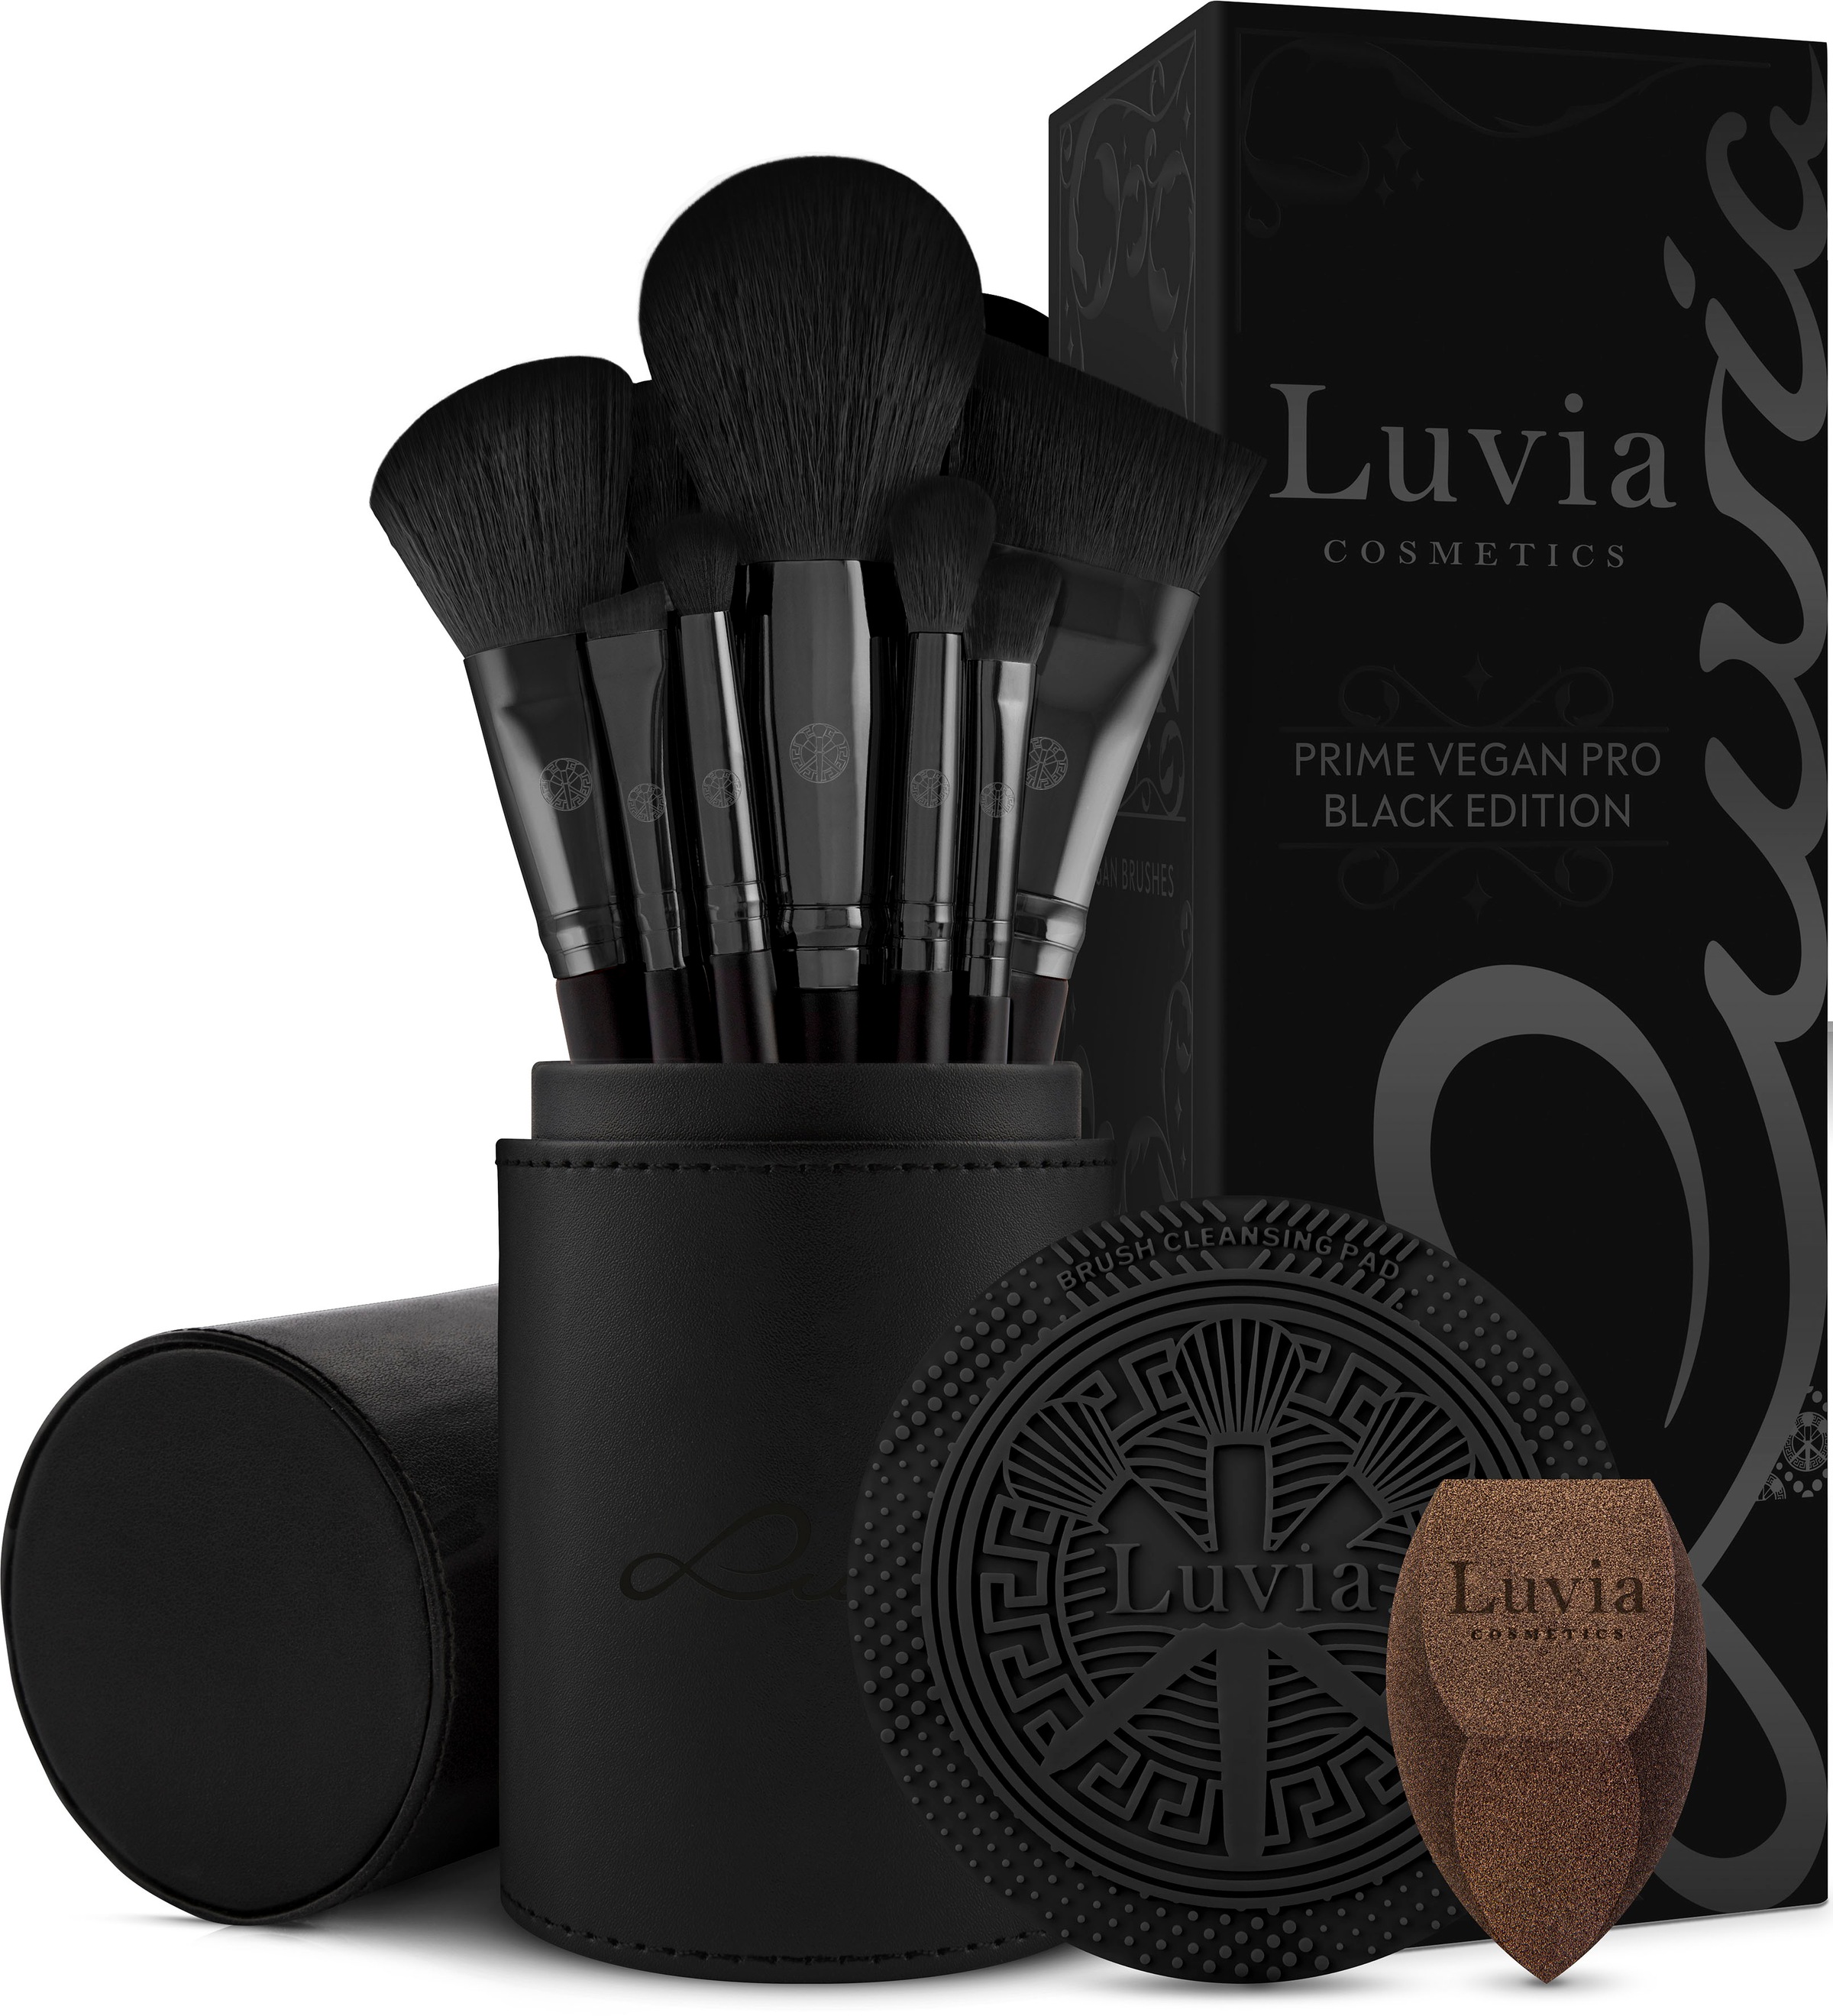 Luvia Cosmetics bei OTTO Auswahl bestellen in großer